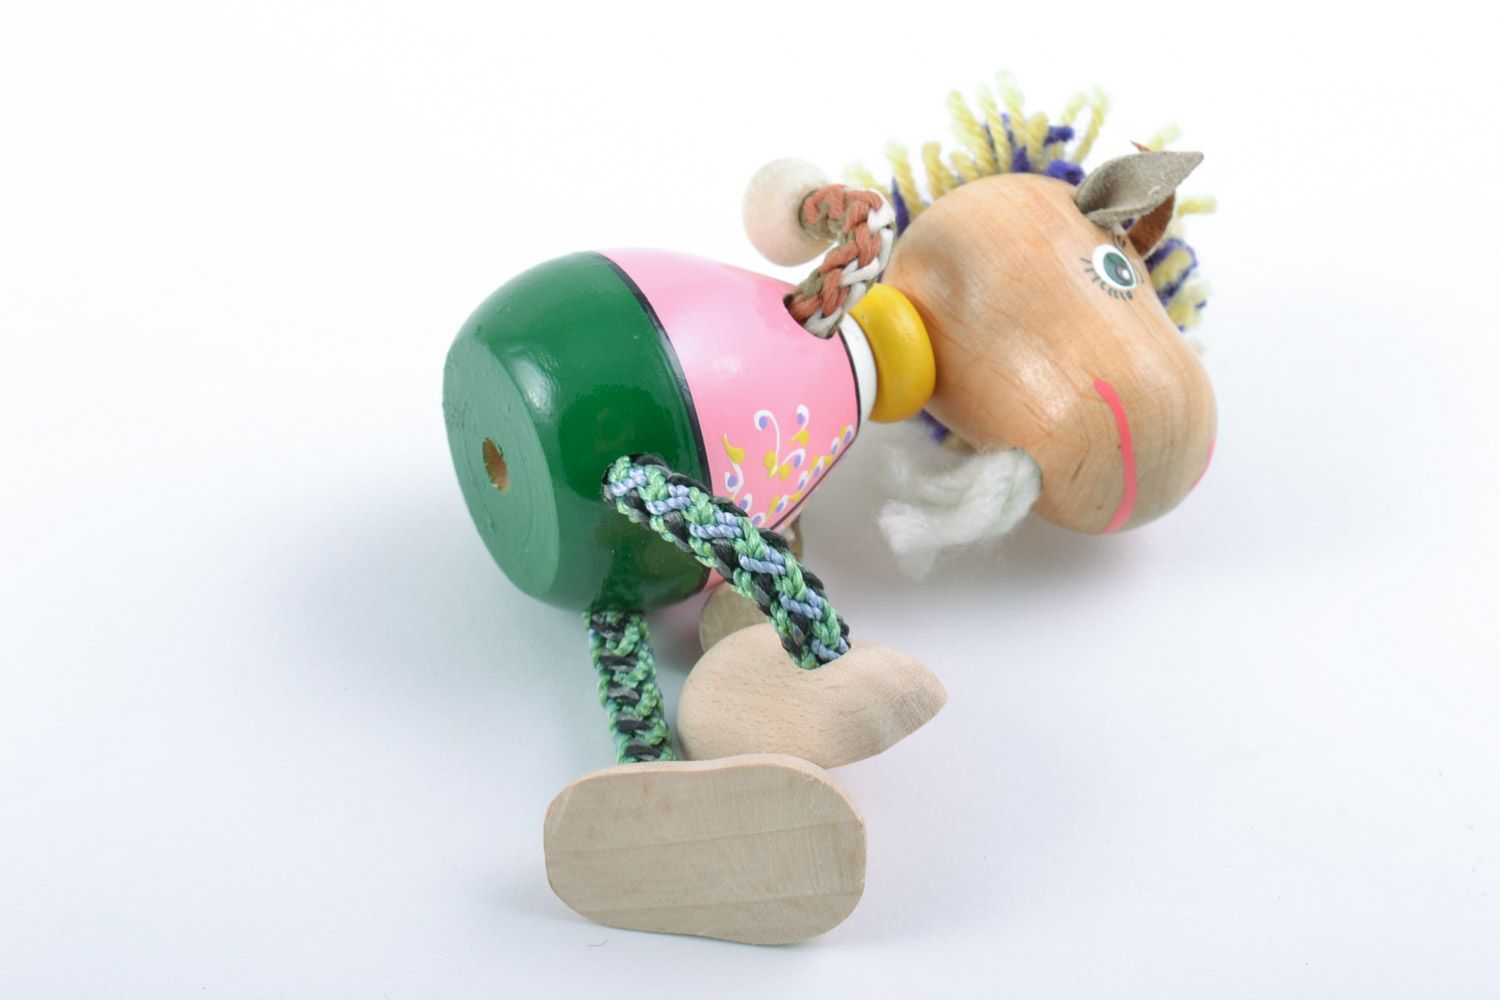 Designer schönes Öko handmade Spielzeug Bock mit Farben bemalt für kleine Kinder foto 5